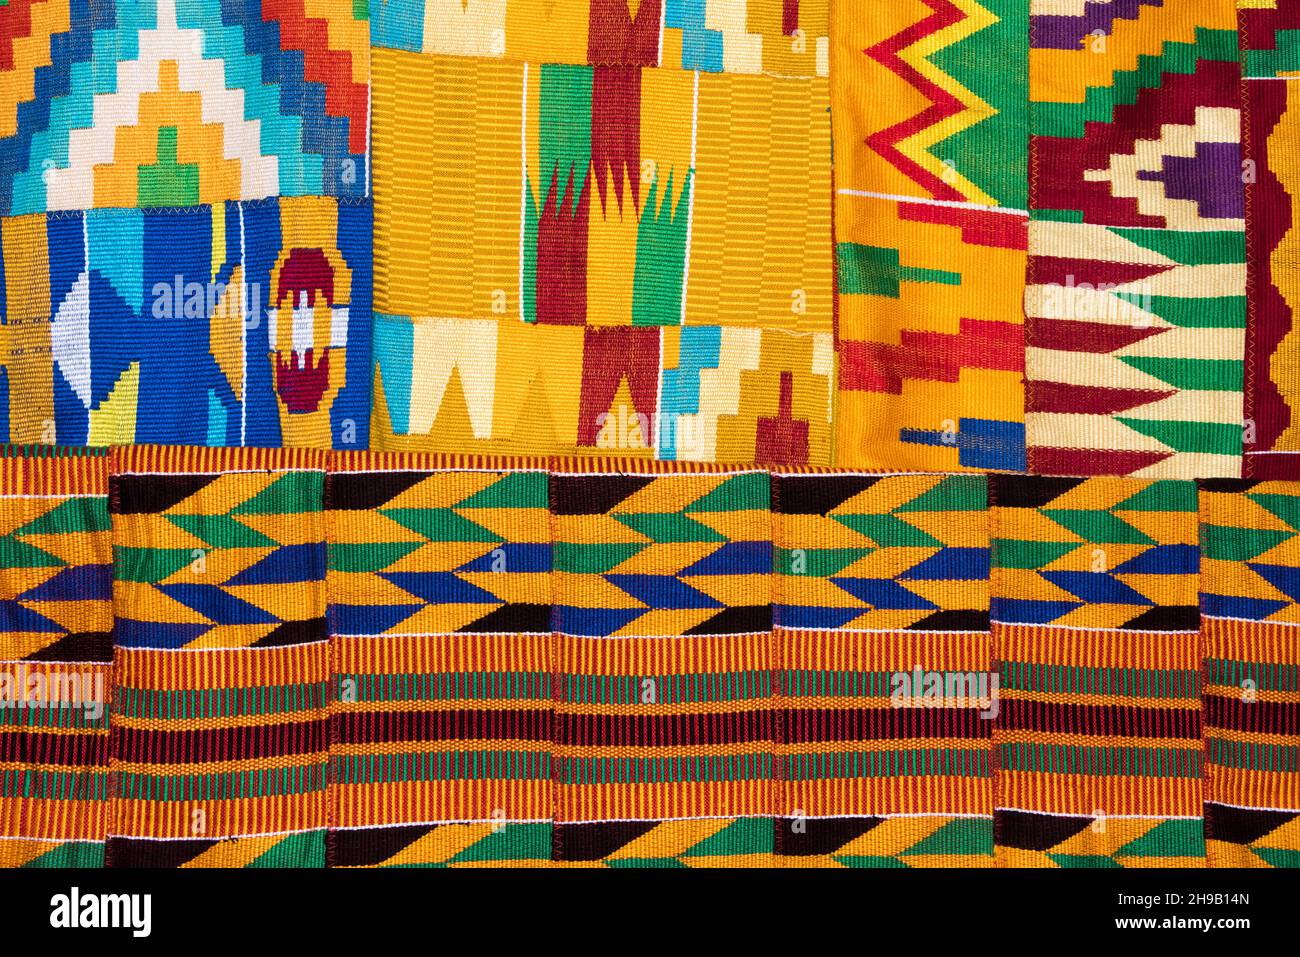 Tejido Kente, un tipo de tela de seda y algodón hecha de tiras de tela entretejidas y nativa del grupo étnico akan de Ghana, Ashanti Regio Foto de stock